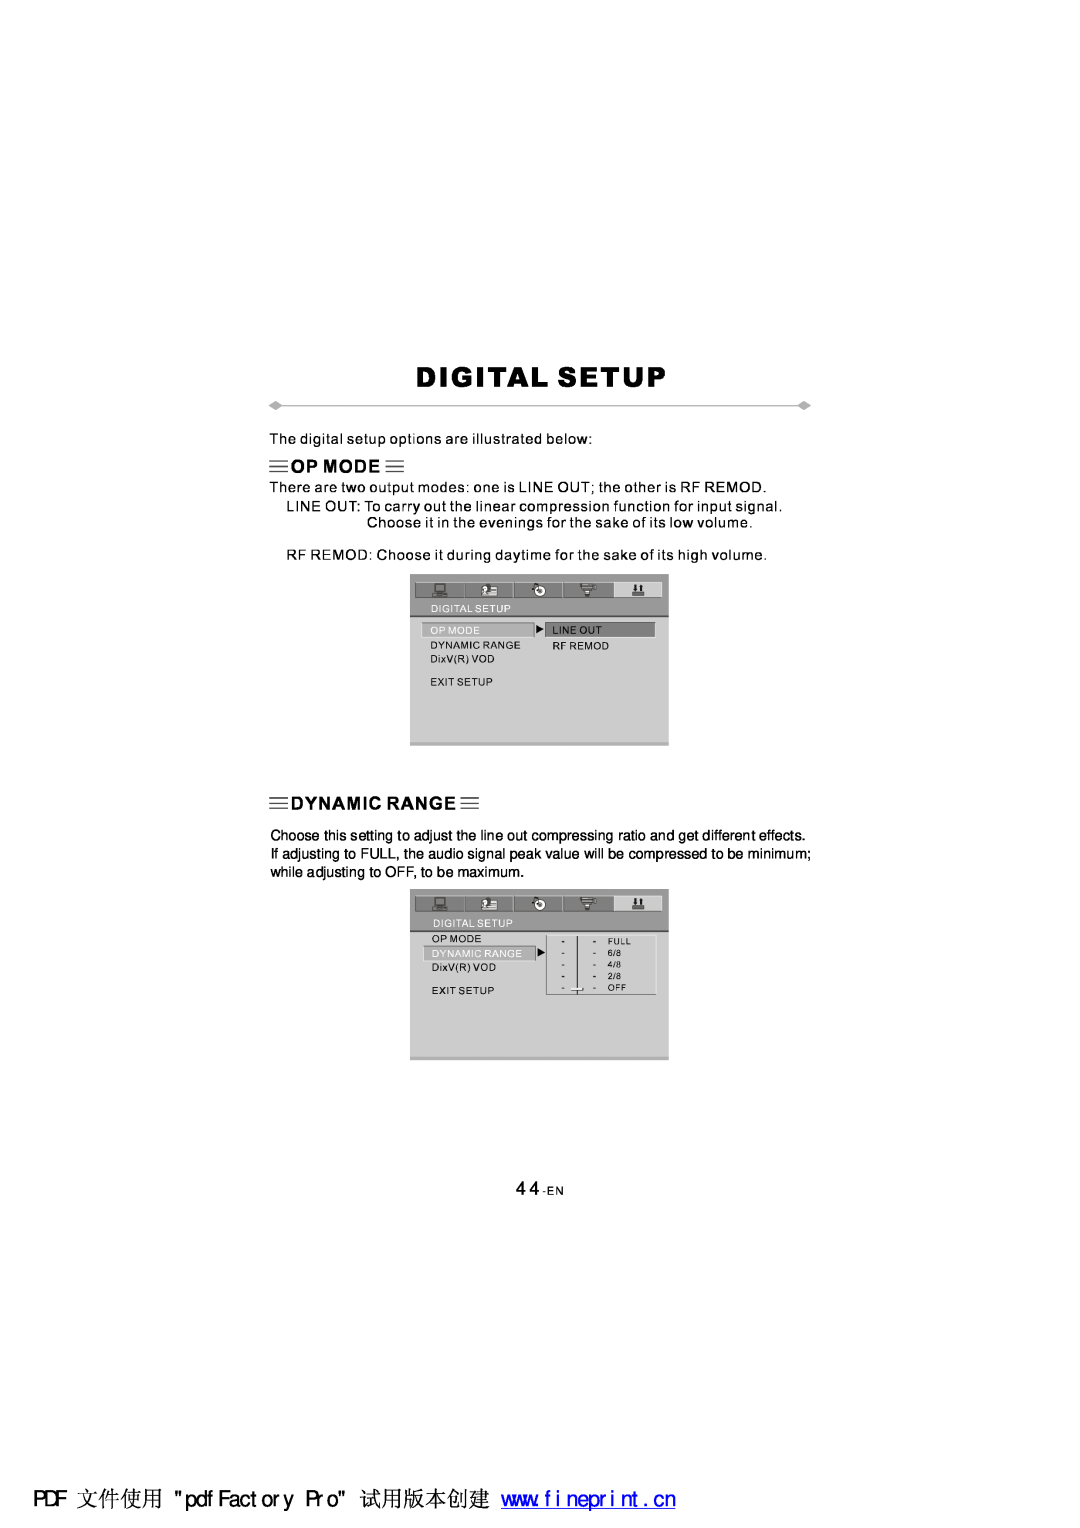 NextBase SDV97-AC manual 44-EN 